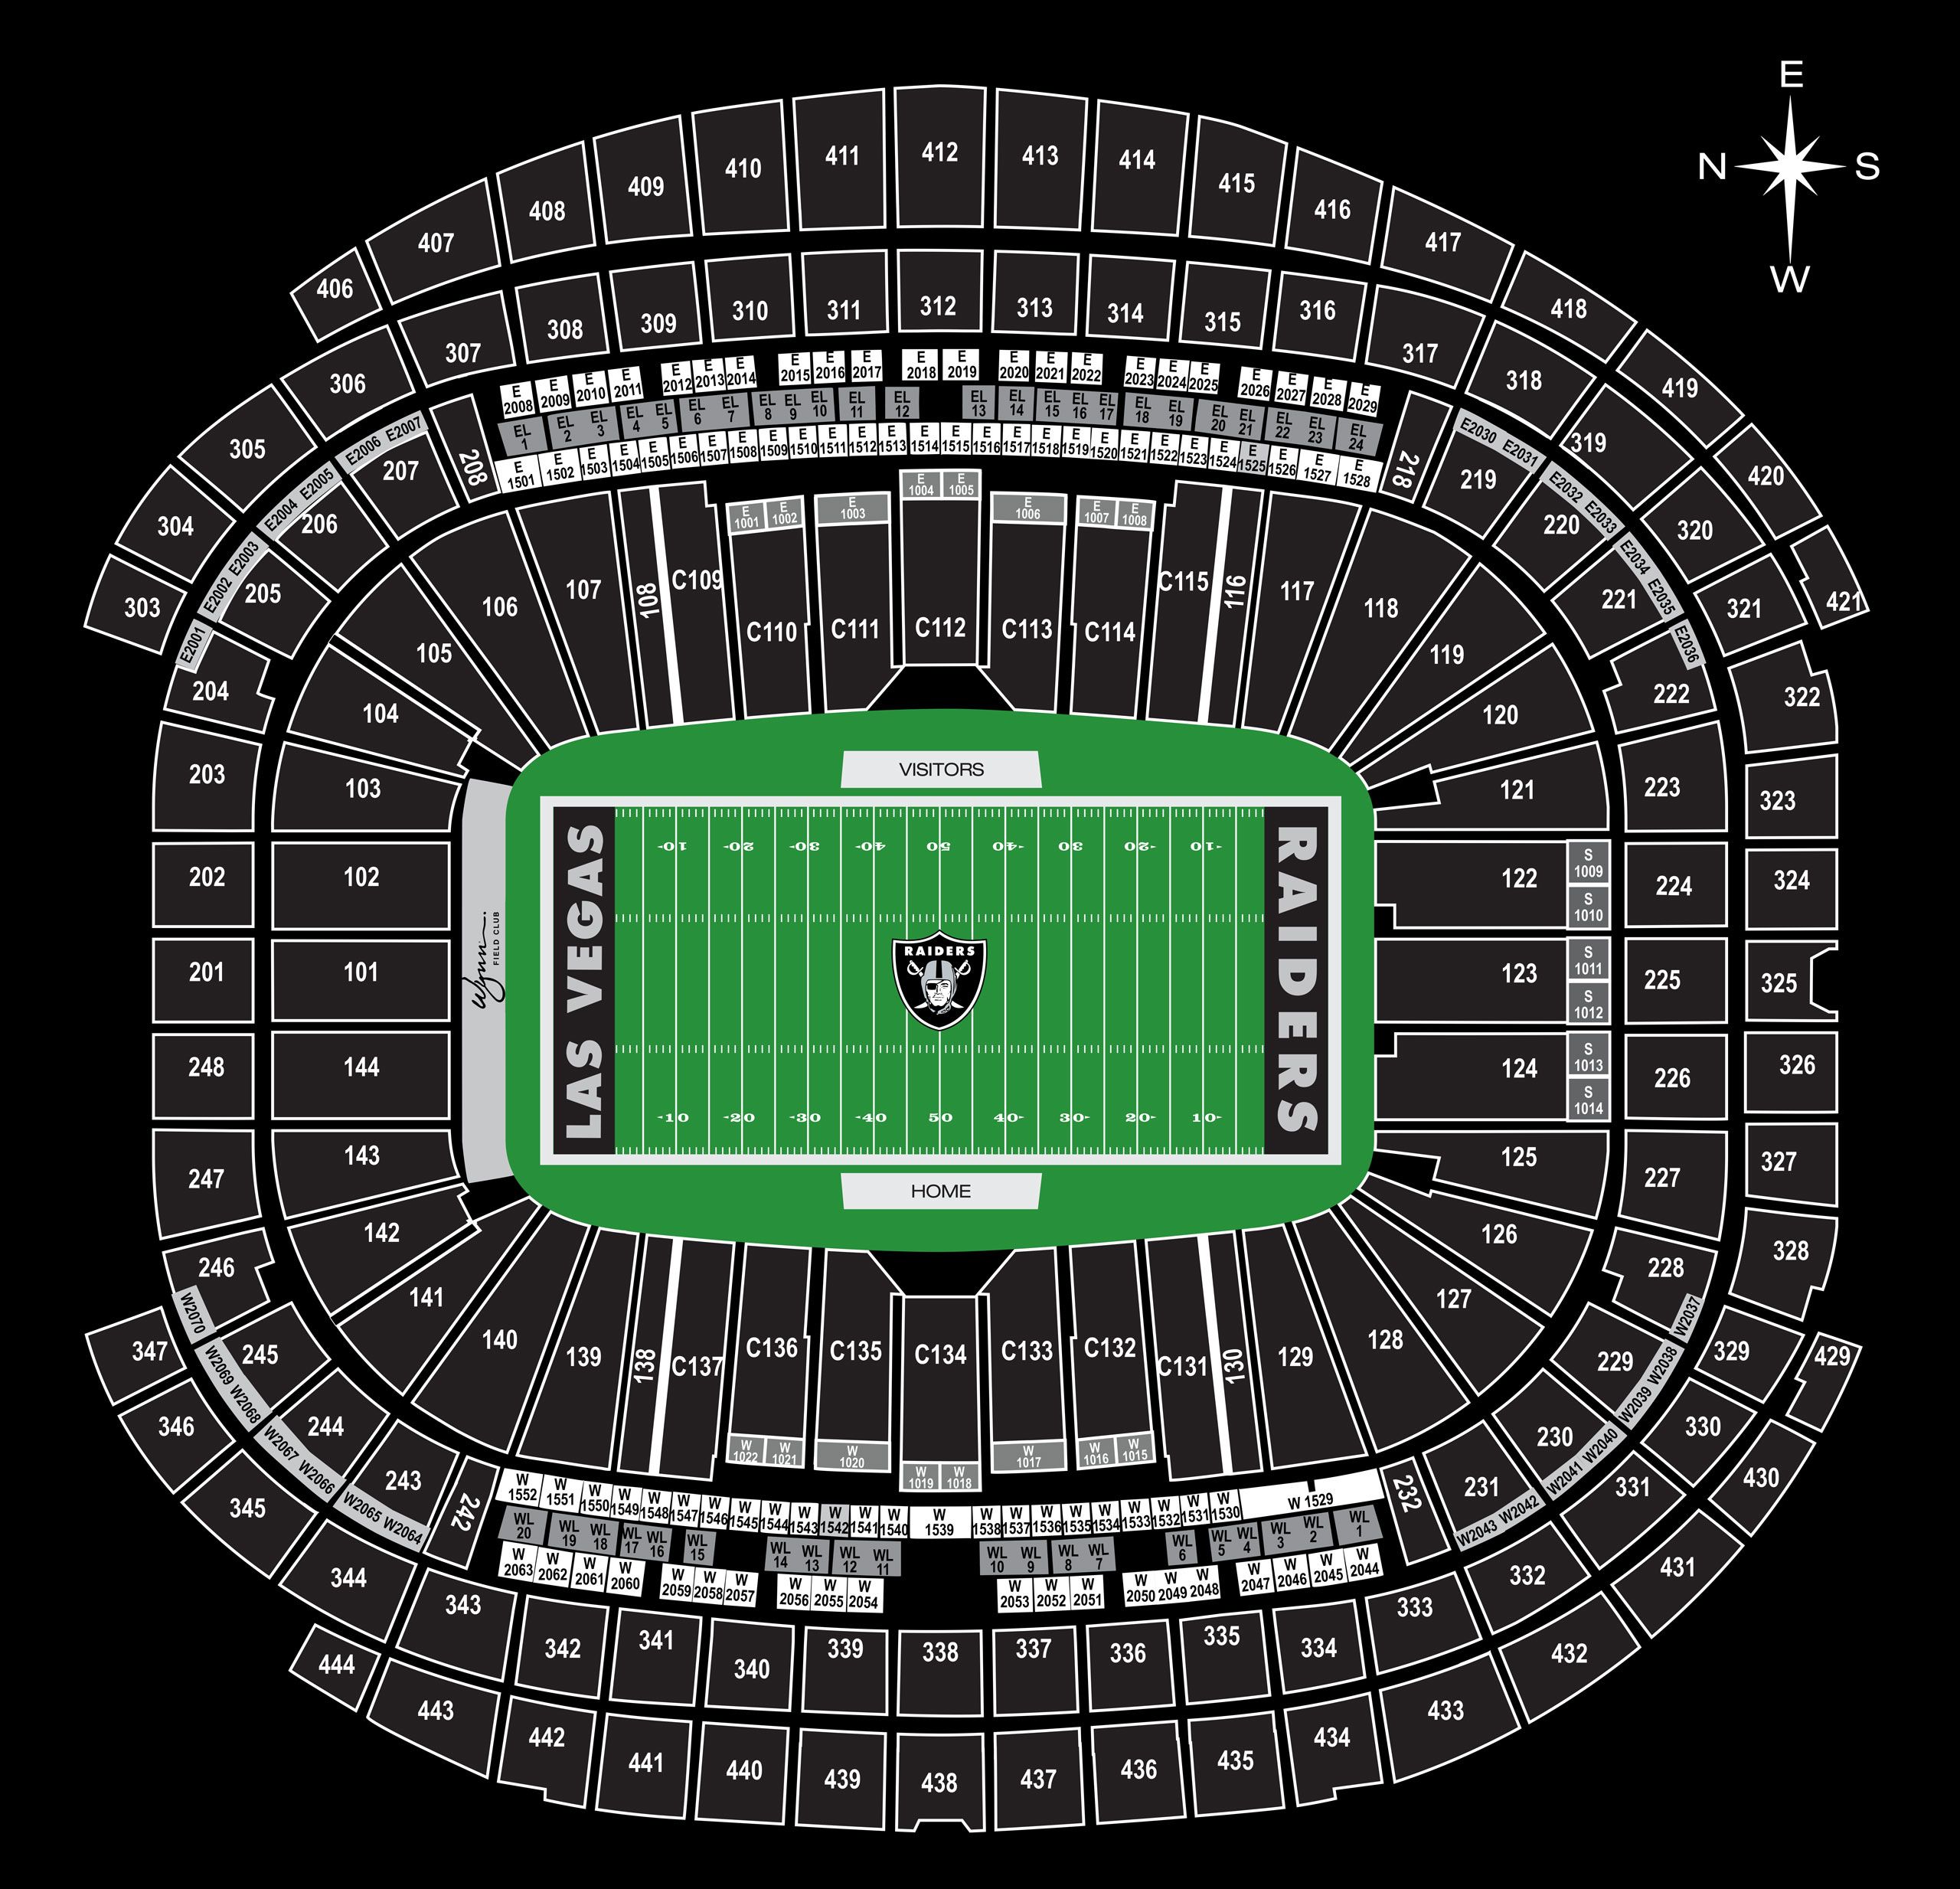 Seating and Pricing Map for Allegiant Stadium, Las Vegas Raiders